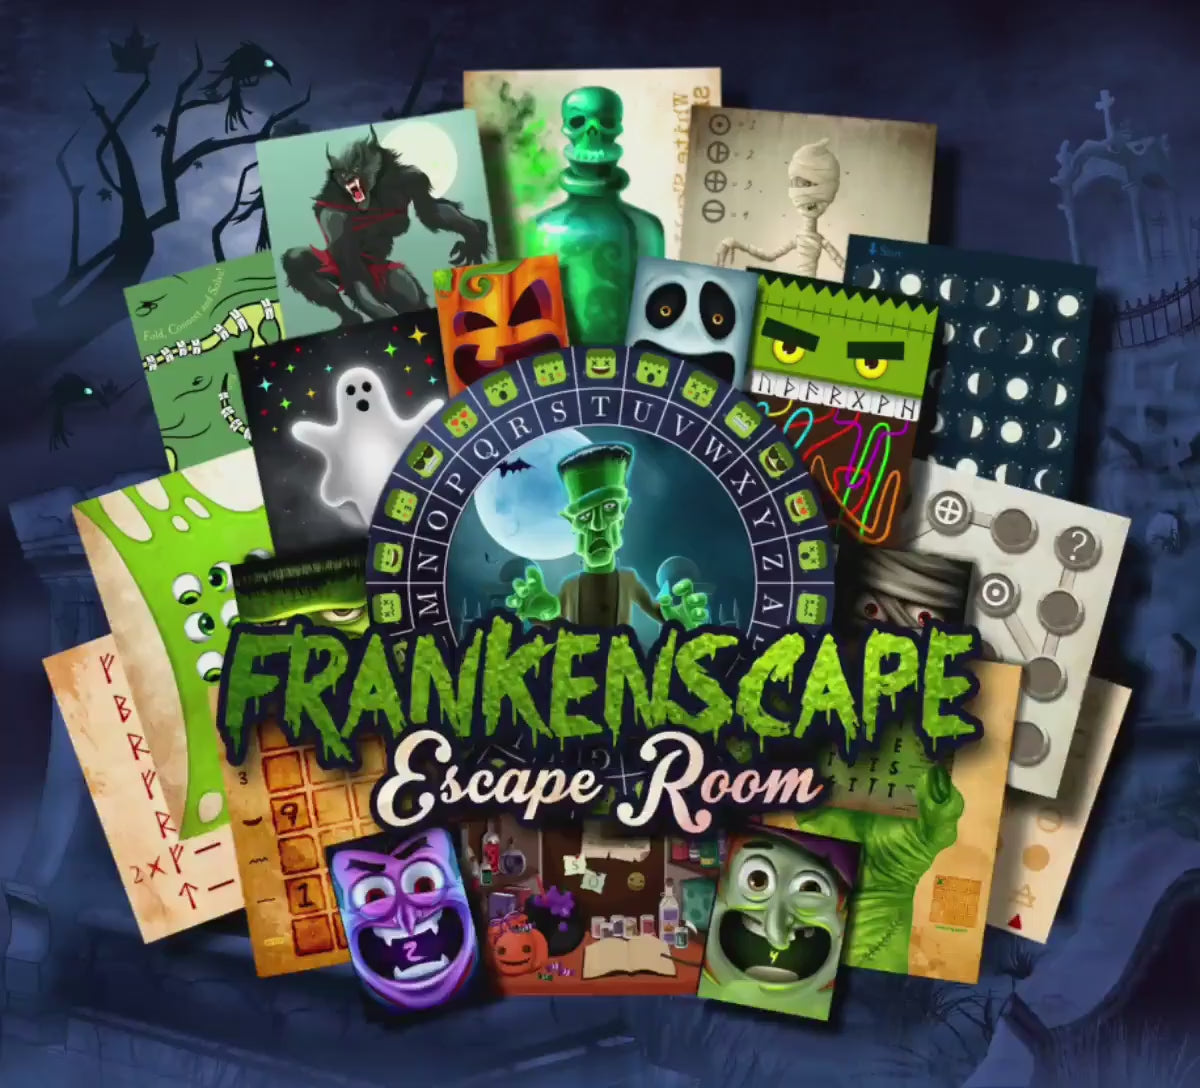 Halloween Escape Room Game DIY Halloween Printable Game Kit for Kids FRANKENSCAPE Escape Room | Halloween Party Game Halloween Game